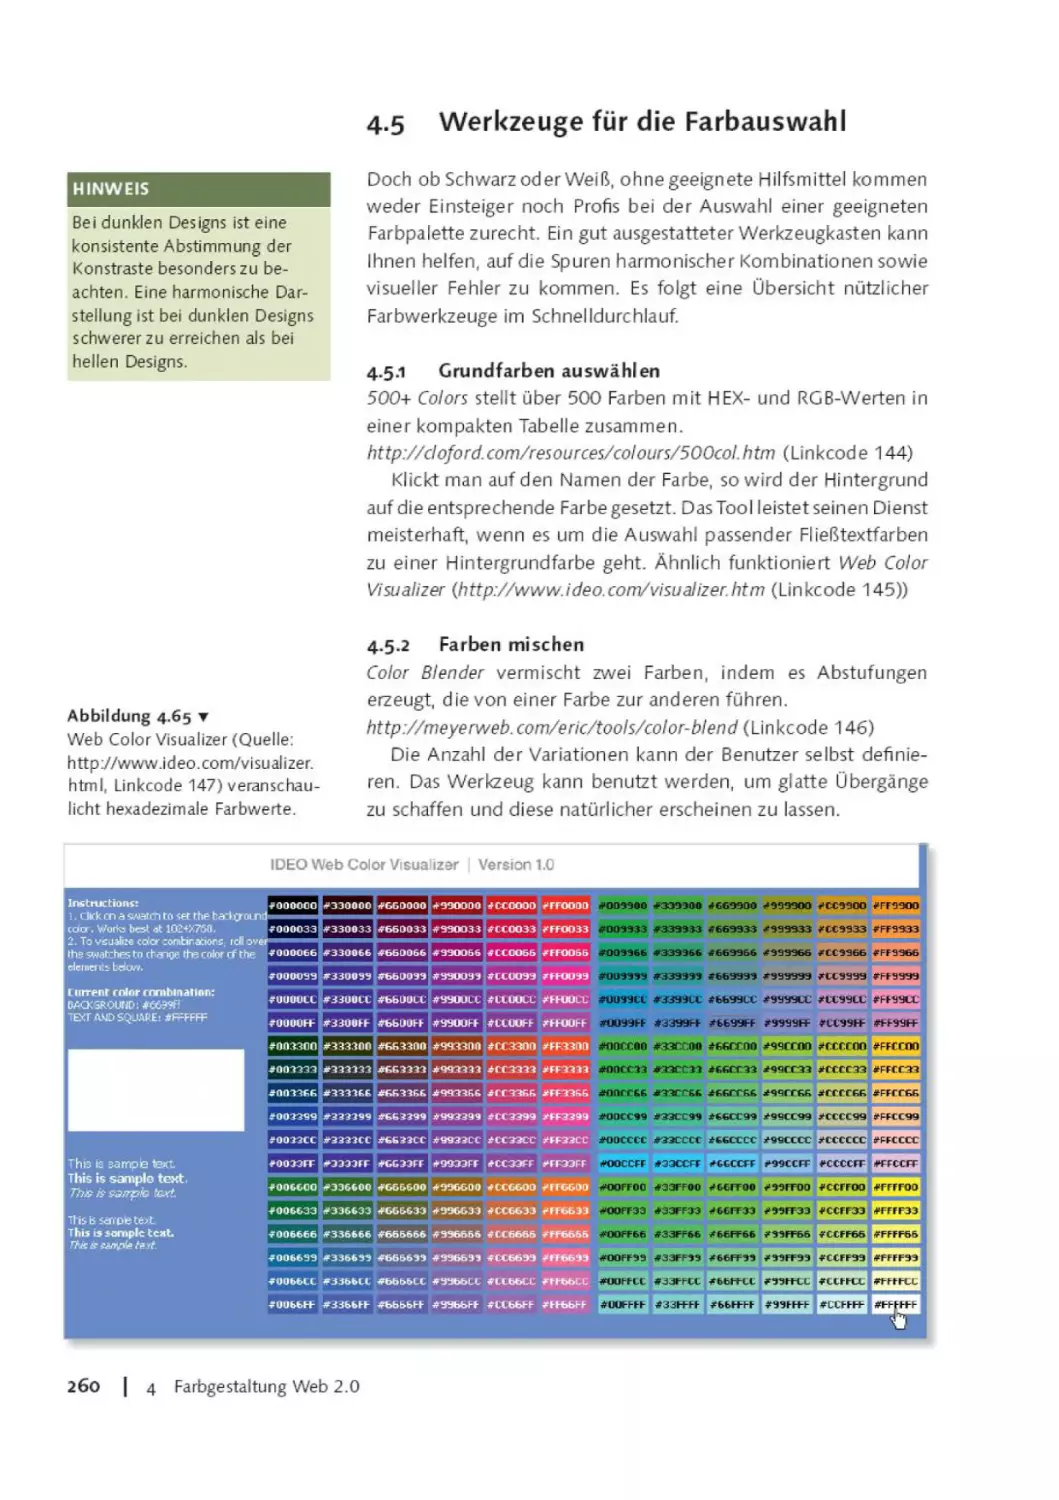 4.5      Werkzeuge für die Farbauswahl
4.5.1       Grundfarben auswählen
4.5.2      Farben mischen